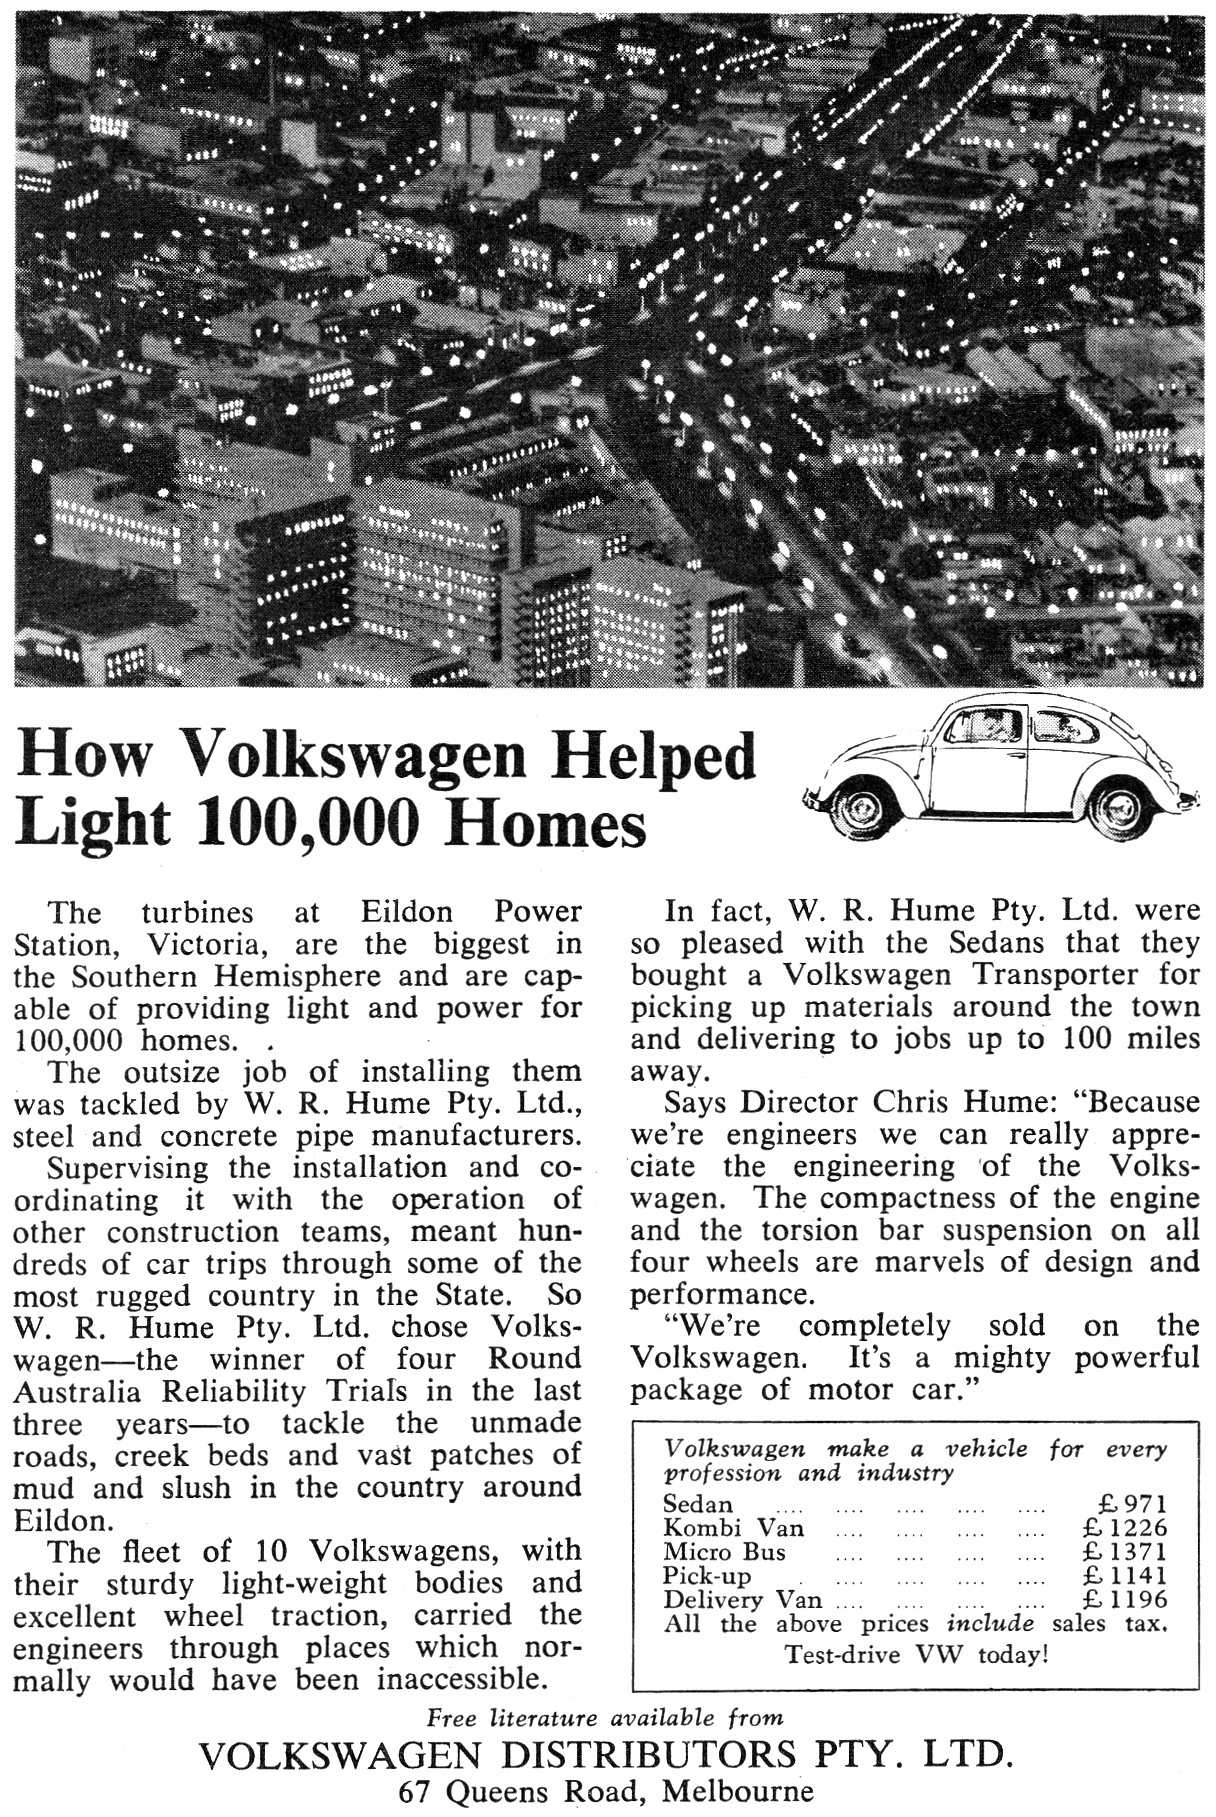 1958 Volkswagen Beetle Helped Light 100,000 Homes